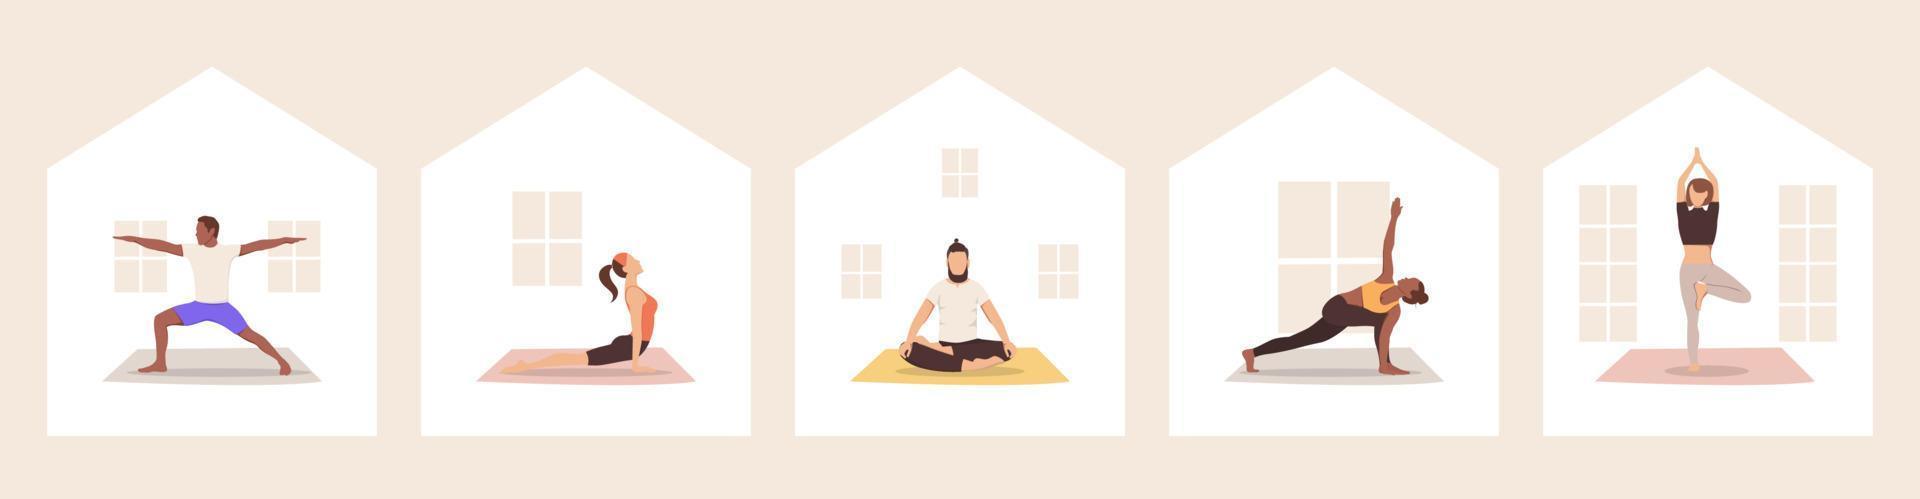 insieme di persone multiculturali che praticano yoga a casa. illustrazione vettoriale